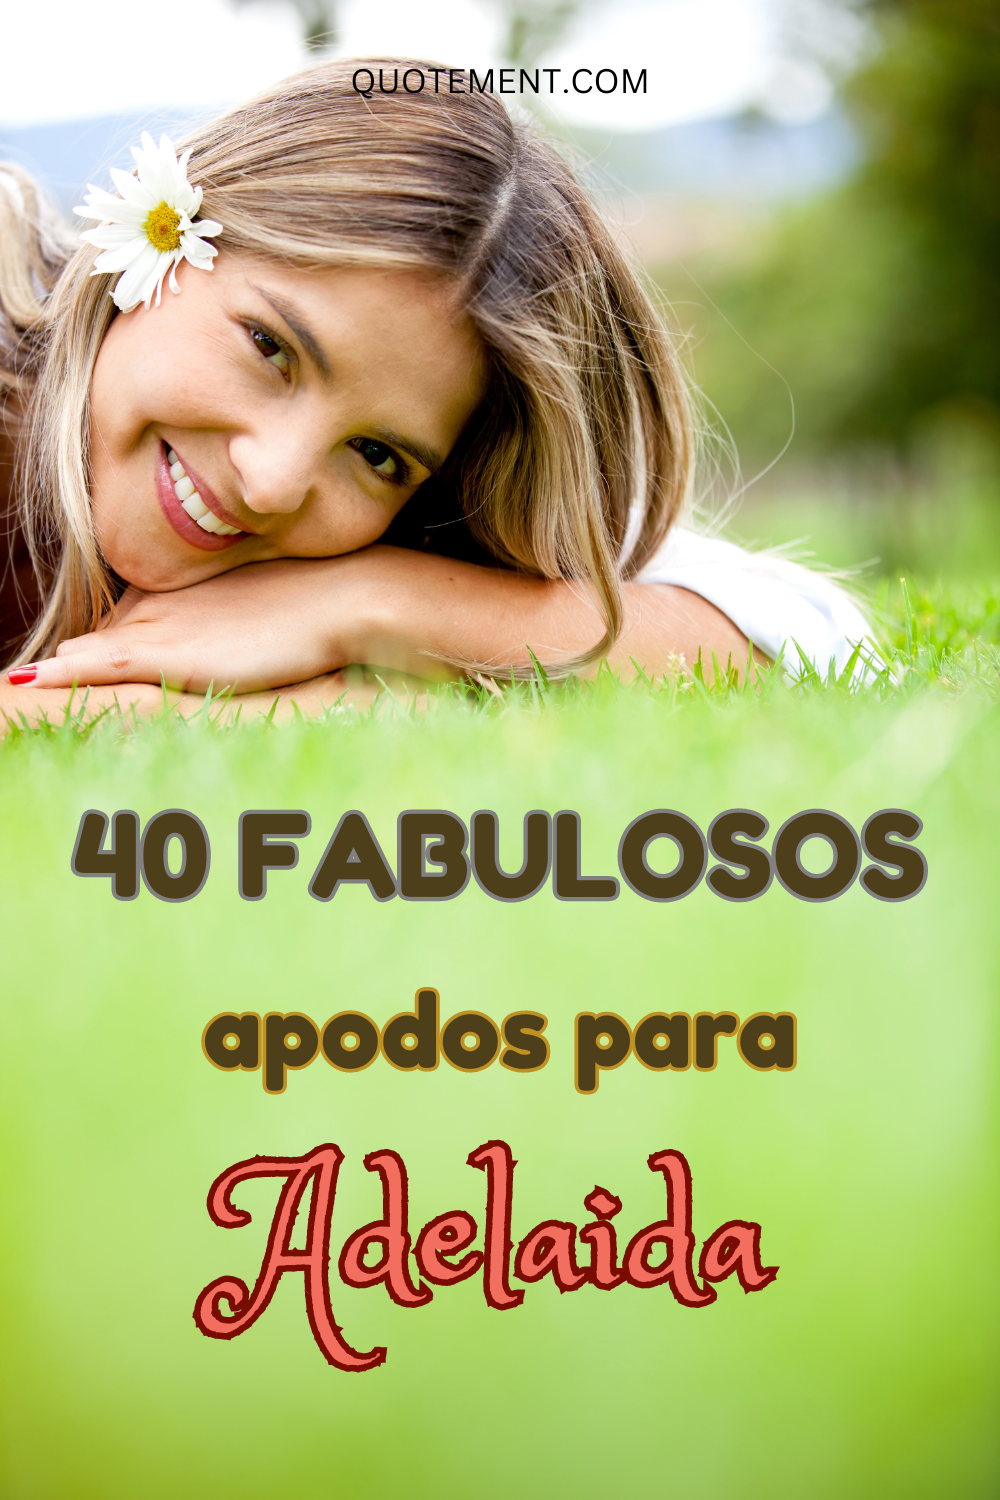 40 fabulosos apodos para Adelaida que deberías probar